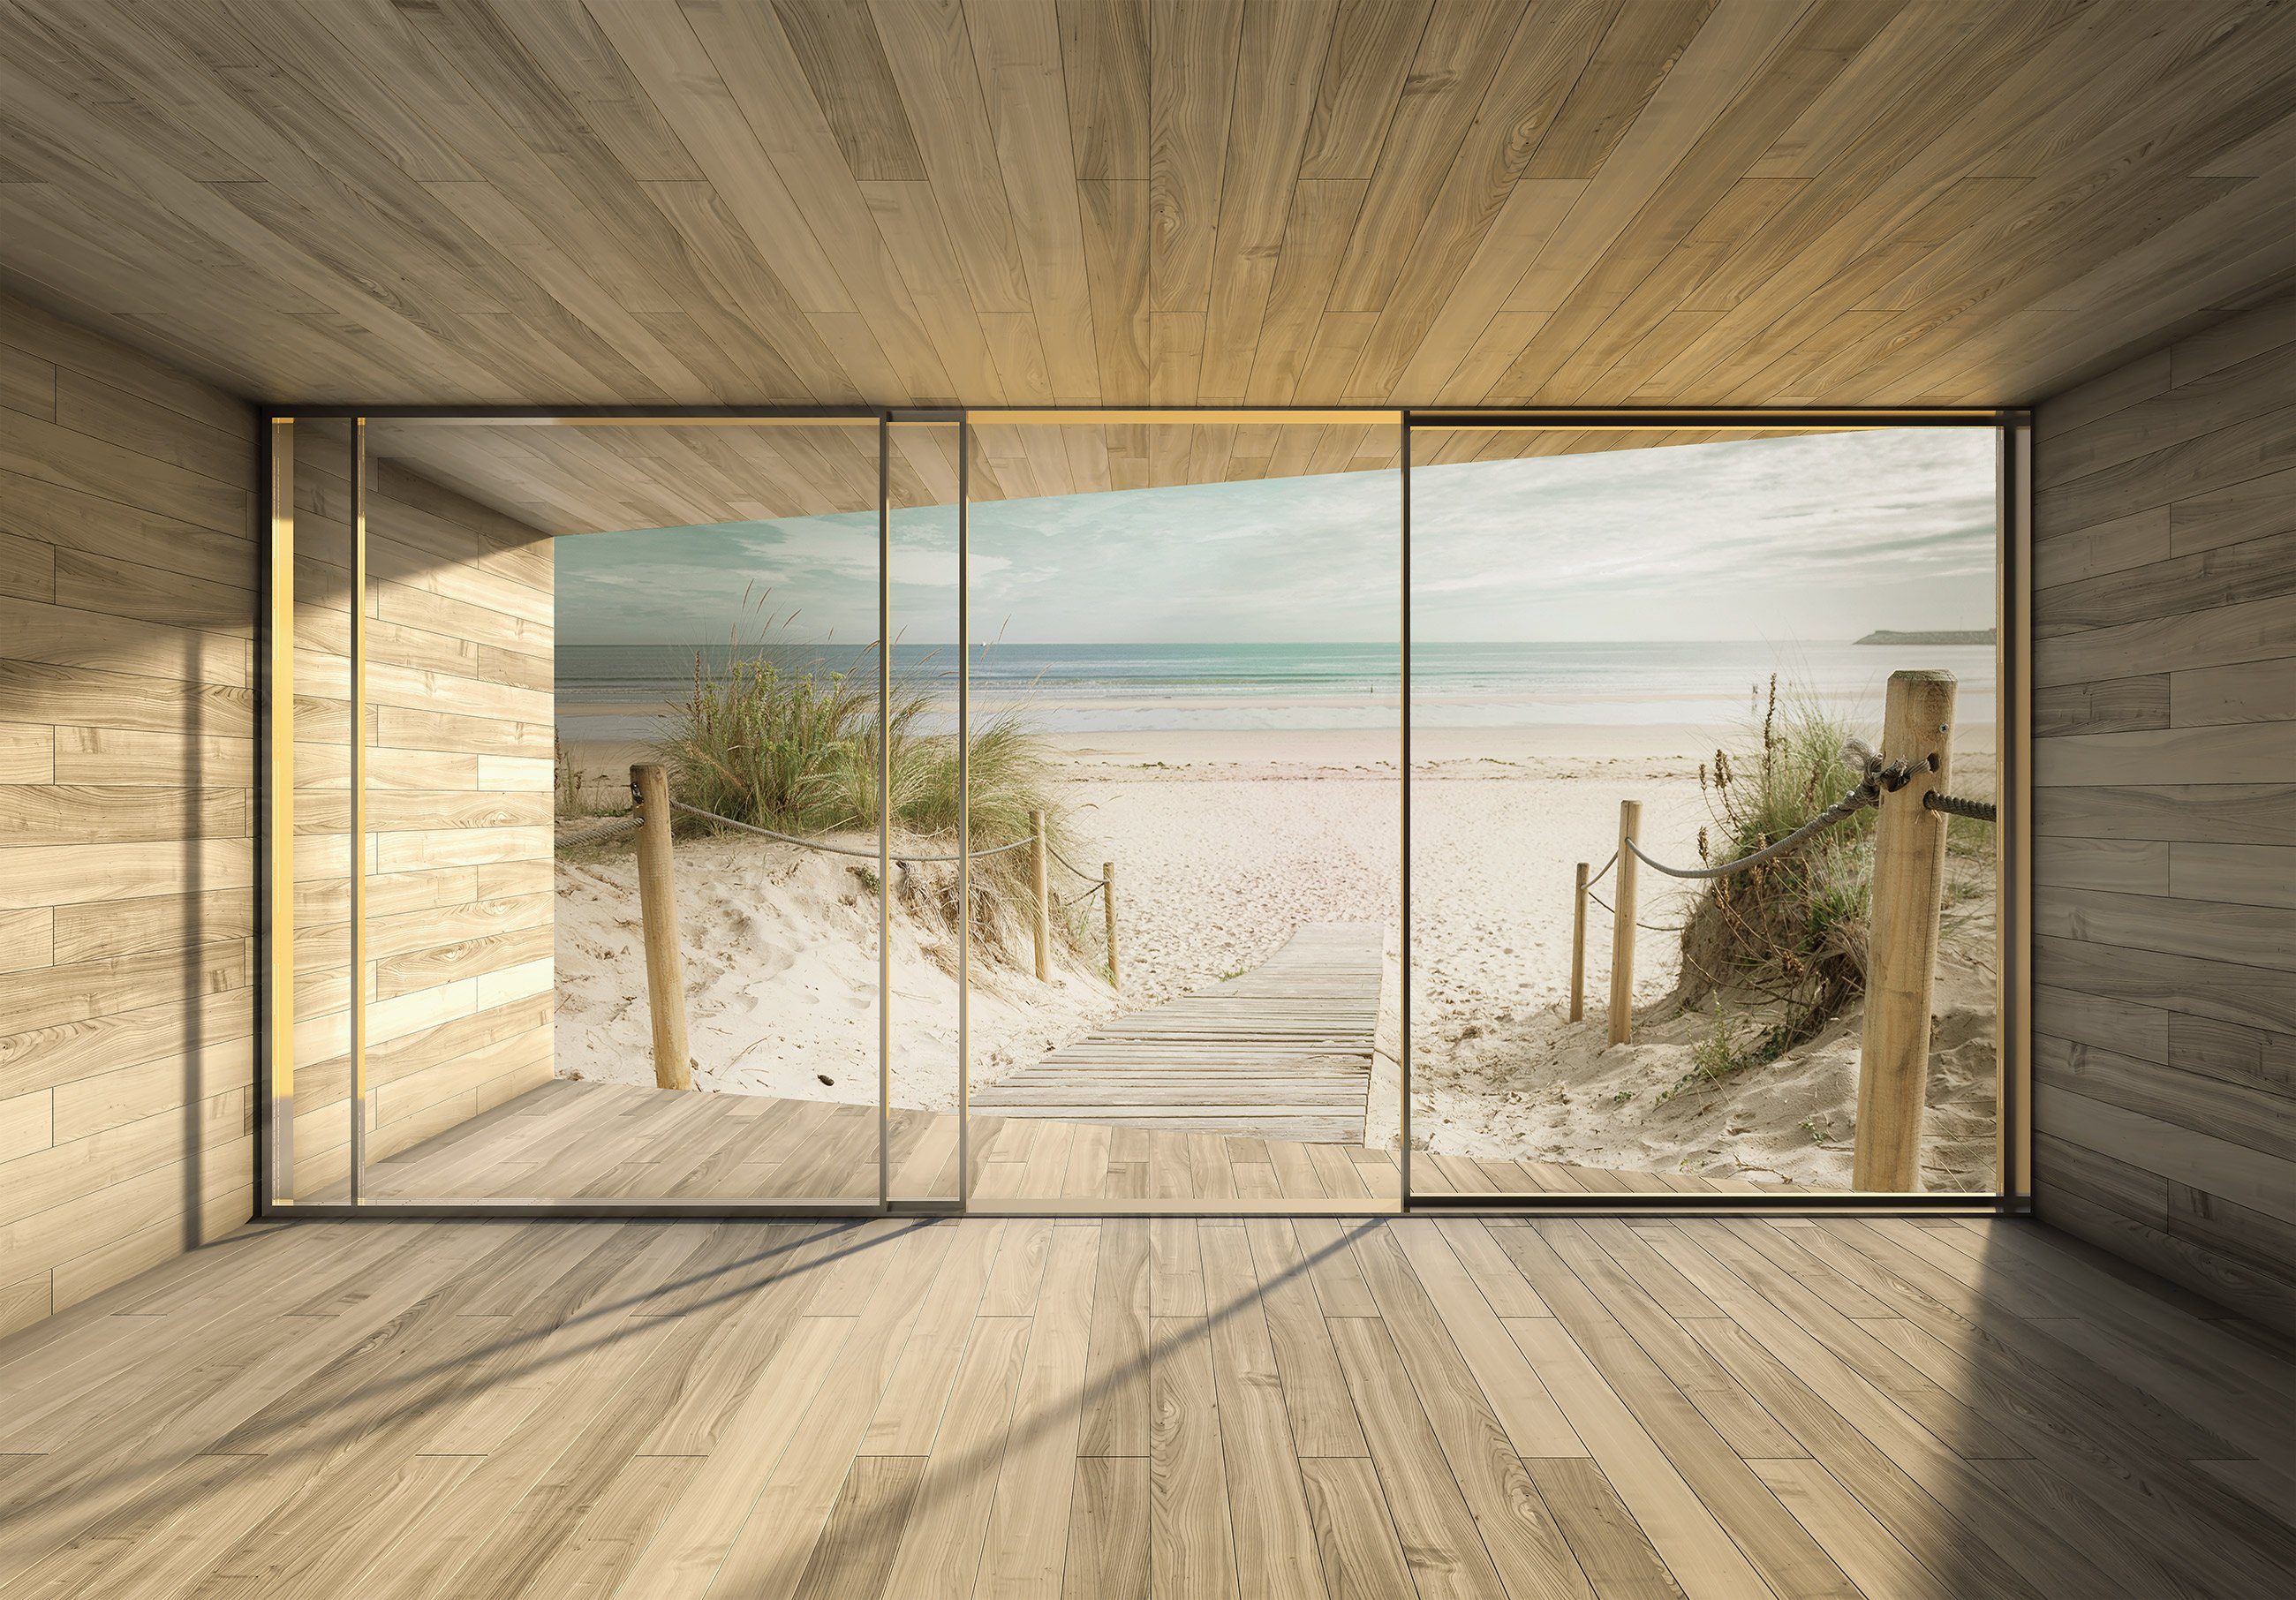 Wallarena Fototapete 3D EFFEKT Strand Meer Sand Panorama Natur Landschaft Fenster Vlies Tapete für Wohnzimmer oder Schlafzimmer Vliestapete Wandtapete Motivtapete, Glatt, 3D-Optik, Vliestapete inklusive Kleister